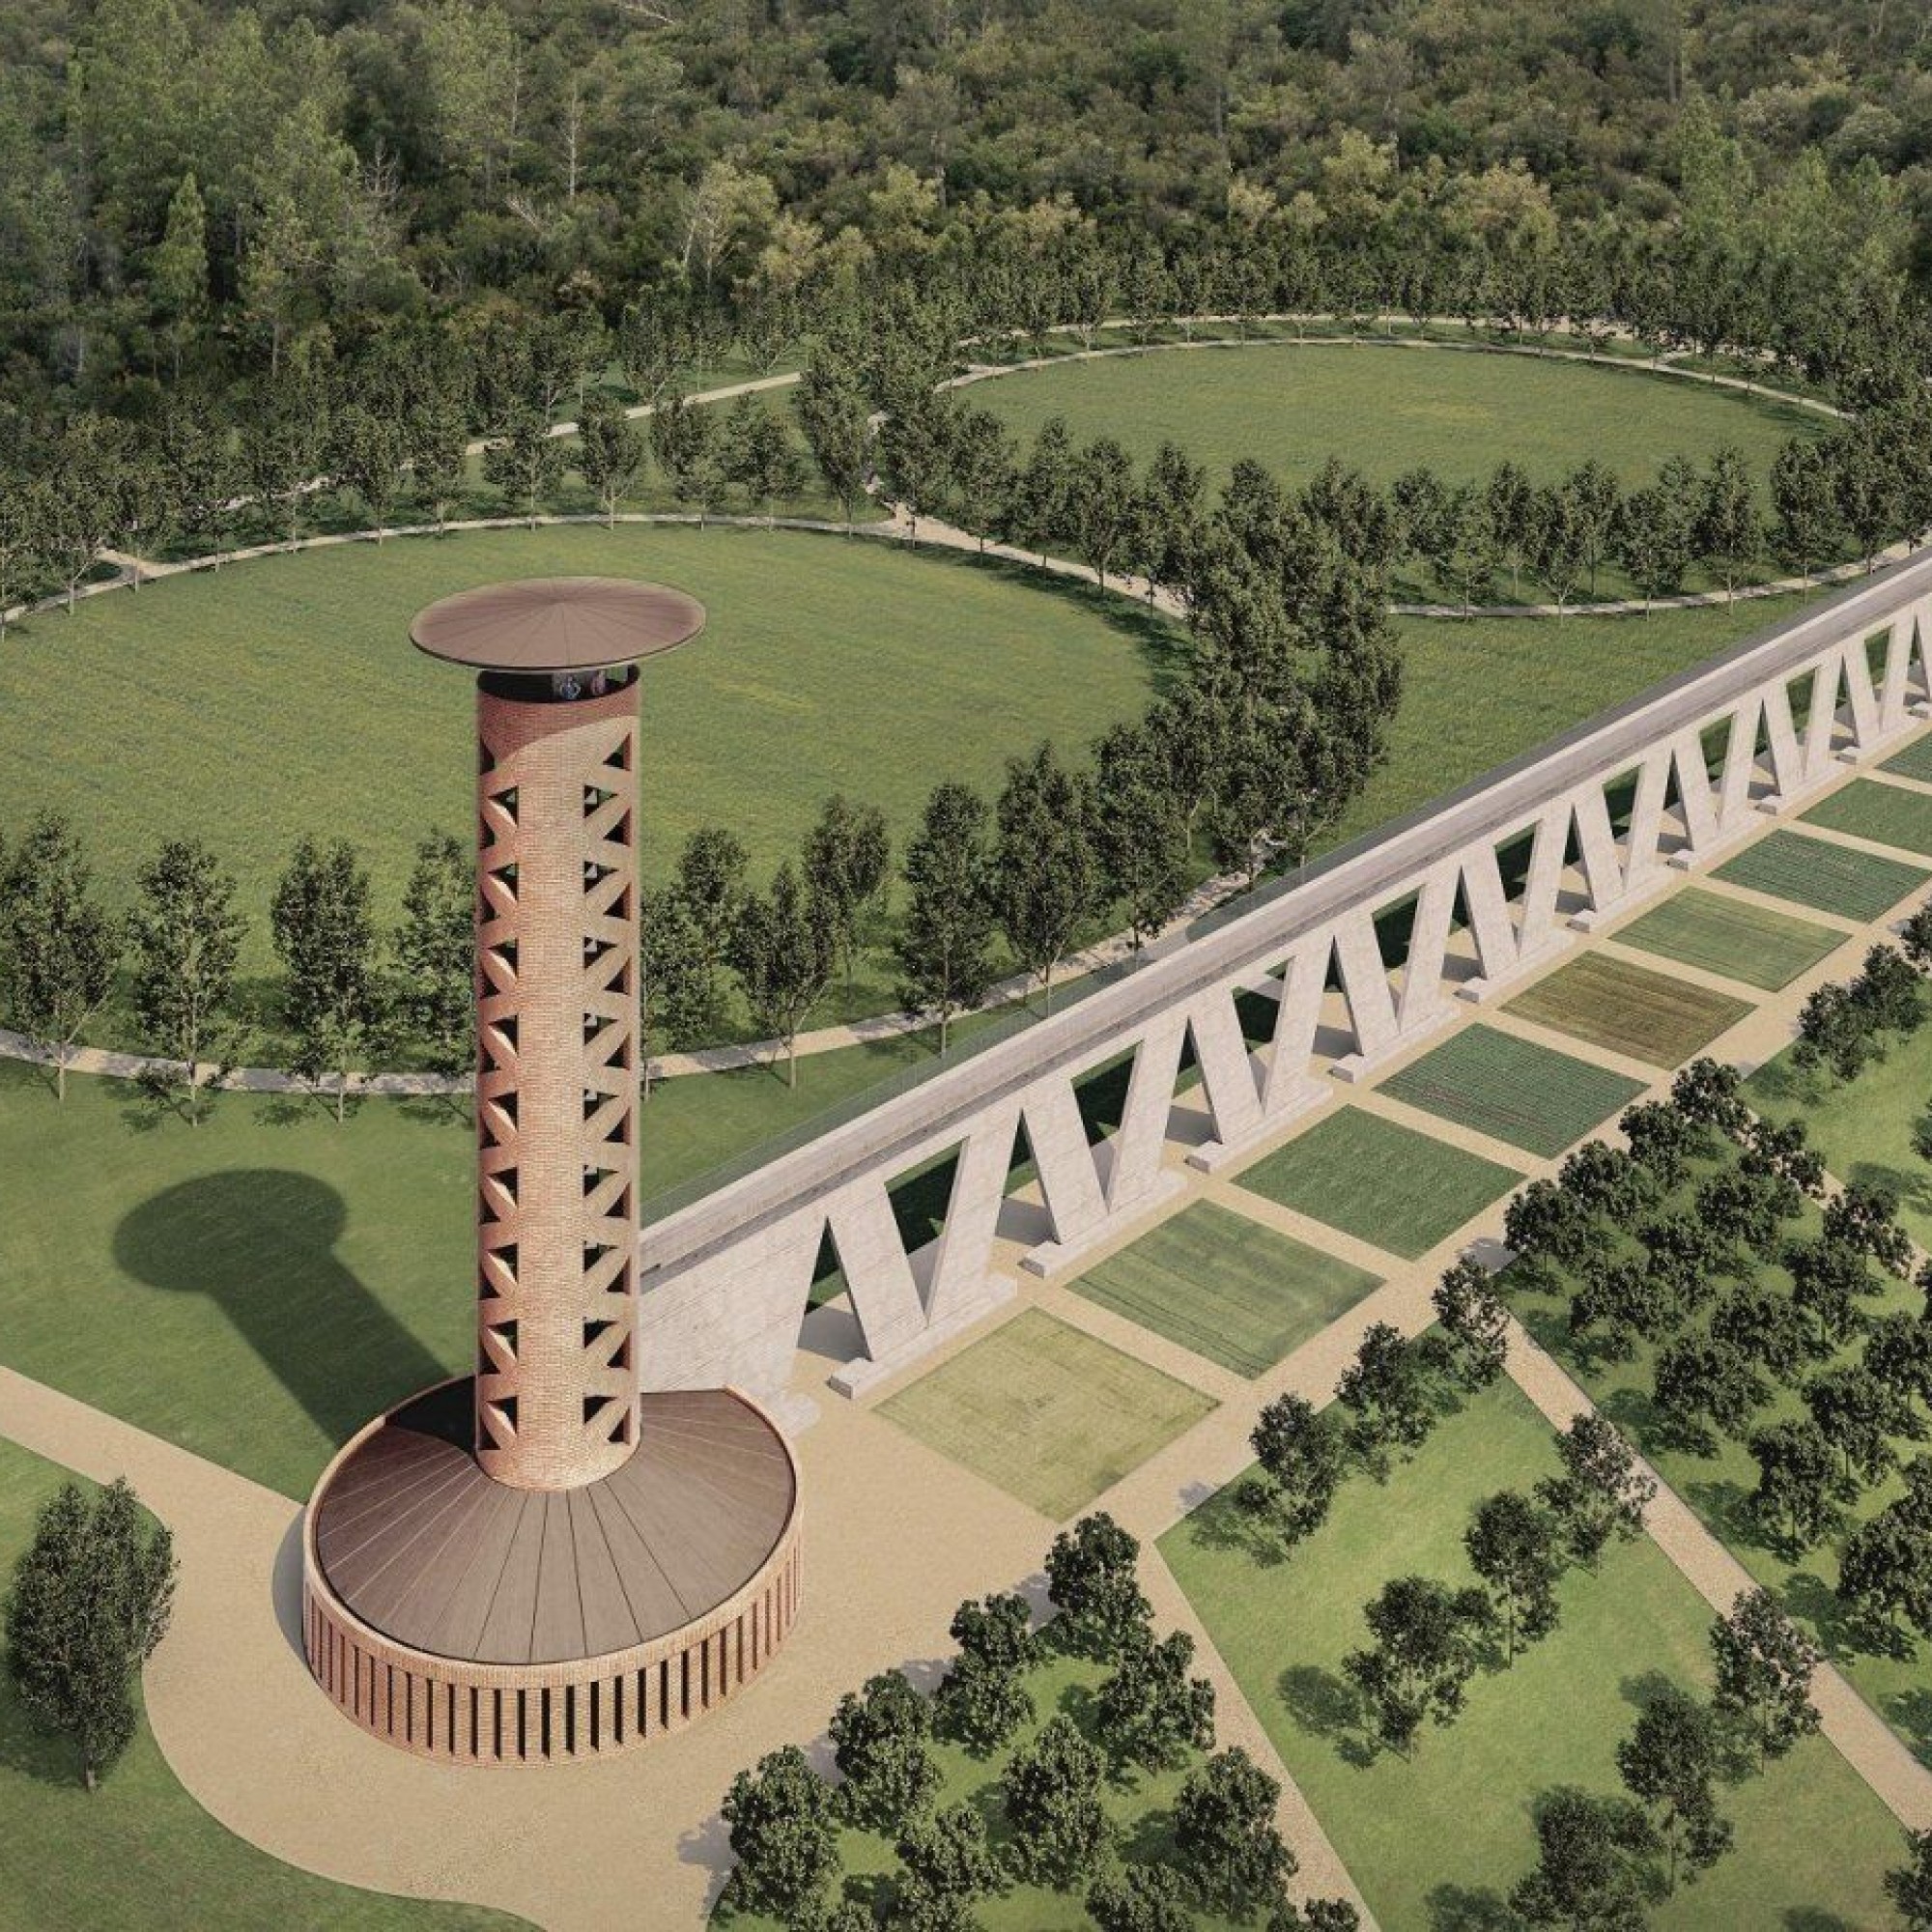 Le site doit accueillir un espace Land'art et une tour imaginée par l'architecte tessinois Mario Botta.